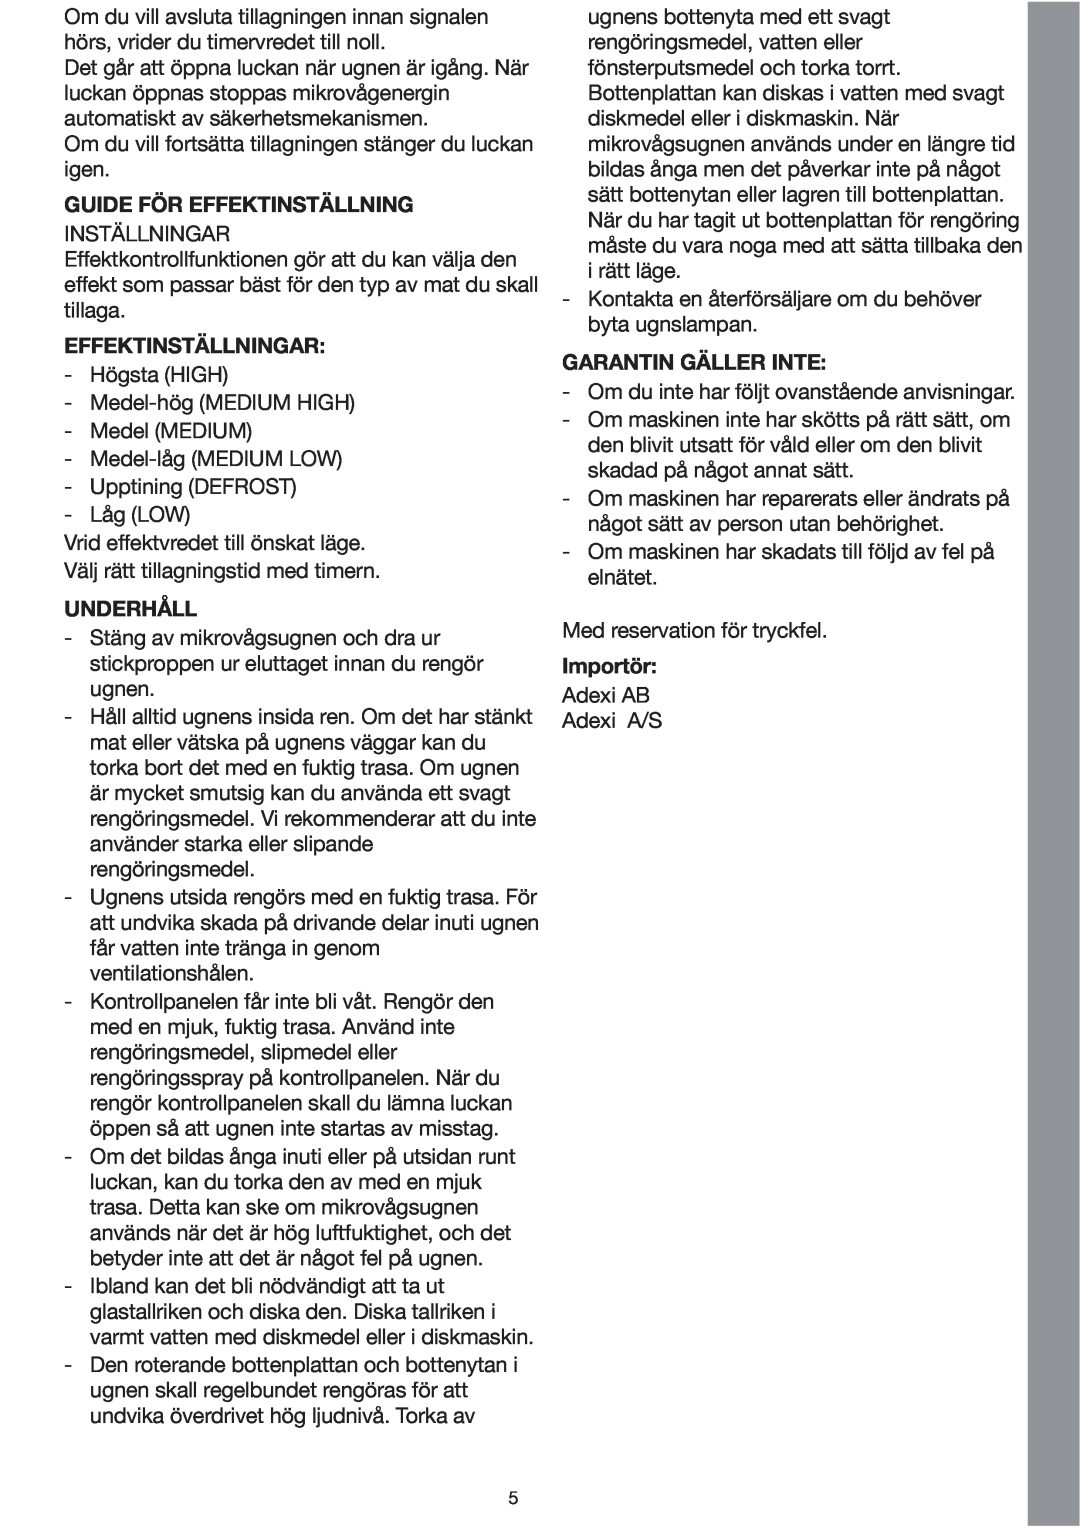 Melissa 253-002 manual Guide För Effektinställning, Effektinställningar, Underhåll, Garantin Gäller Inte, Importör 